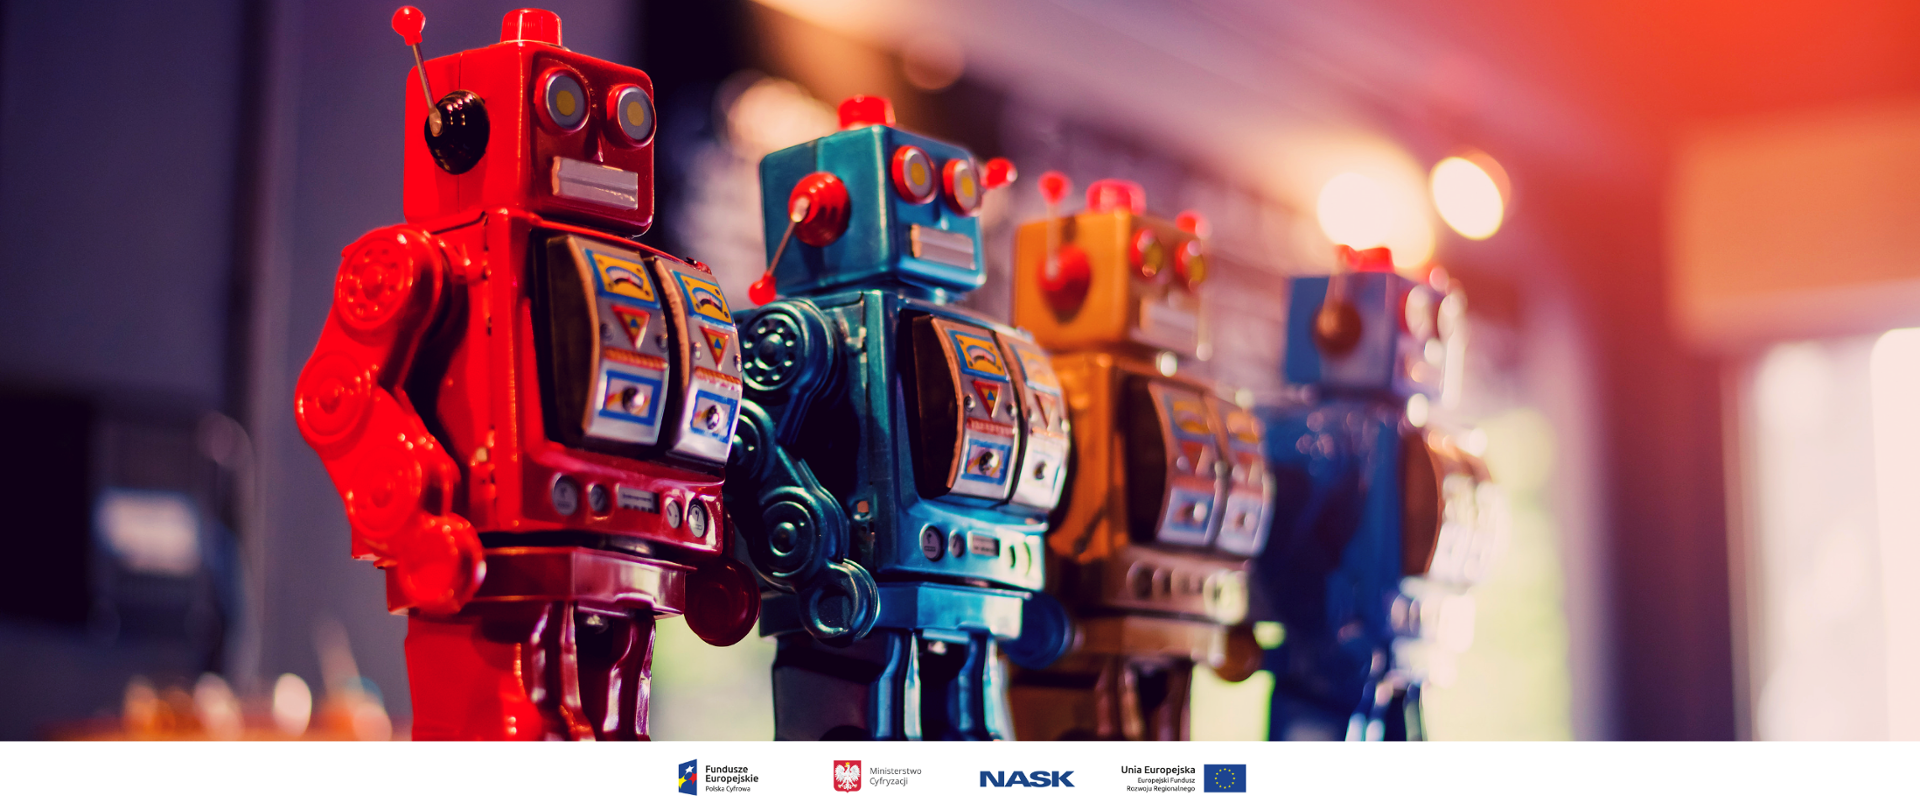 Na zdjęciu widać cztery stojące obok siebie zabawkowe roboty - im dalej w prawo tym obraz jest bardziej rozmyty, tak że ostatni z robotów jest mało wyraźny i niknie w odblaskach świetlnych. U dołu znajduje się pasek logotypów: Europejskie Fundusze Polska Cyfrowa, Ministerstwo Cyfryzacji, NASK i Unia Europejska Europejski Fundusz Rozwoju Regionalnego.